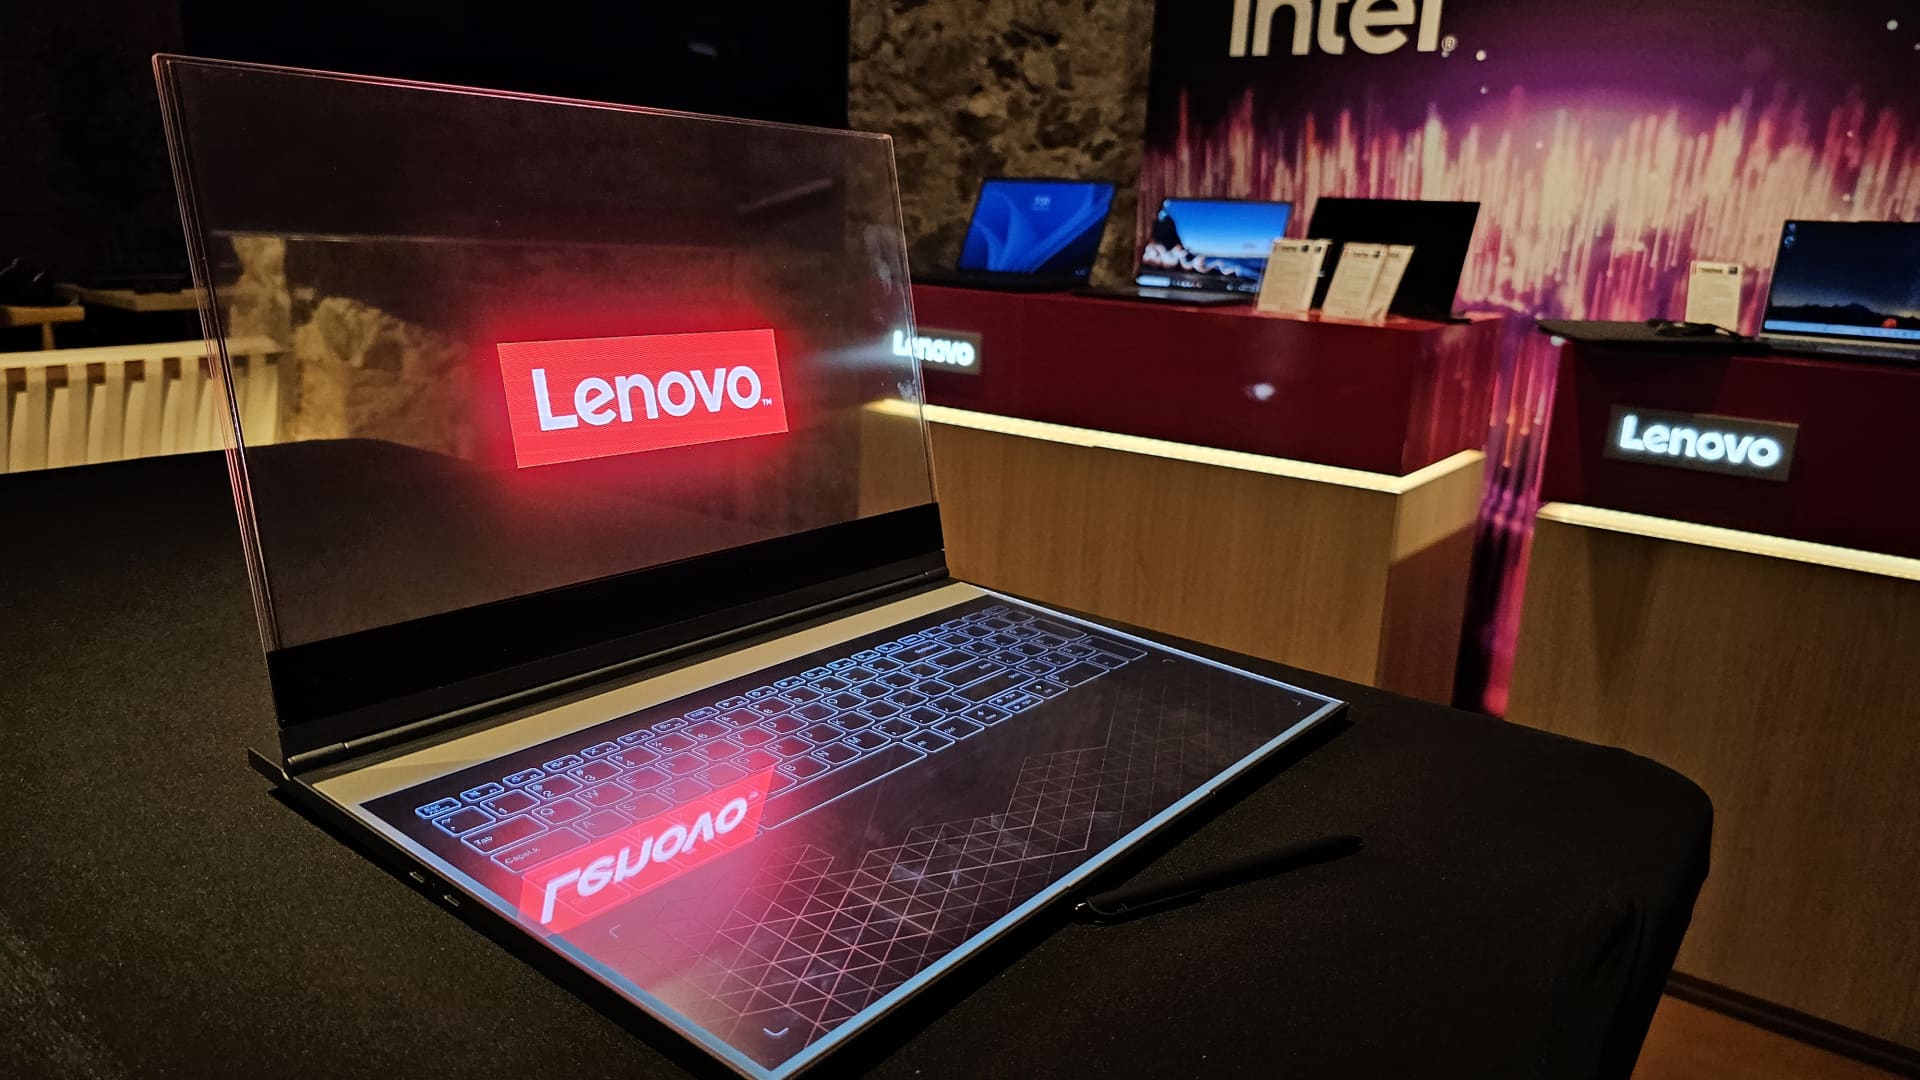 Lenovo's concept laptop has a see-through screen.